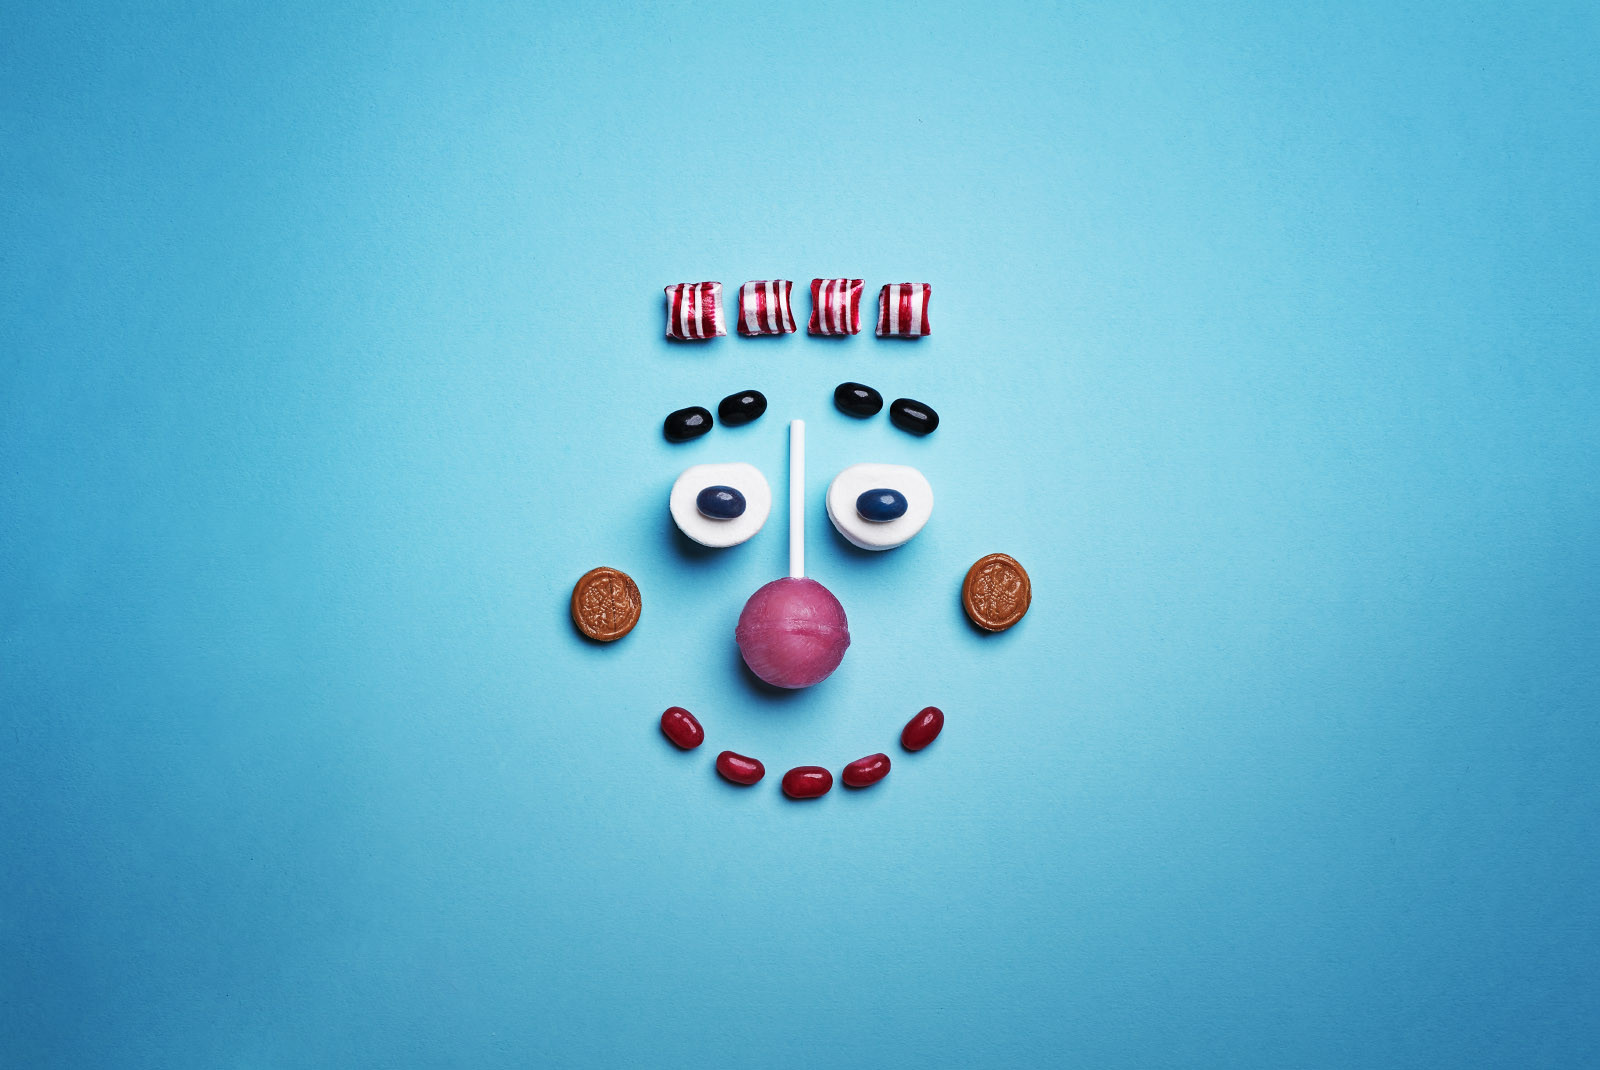 Ein lachendes Gesicht, bestehend aus Drops, Bonbons und einem Lutscher, fotografiert auf blauem Untergrund.